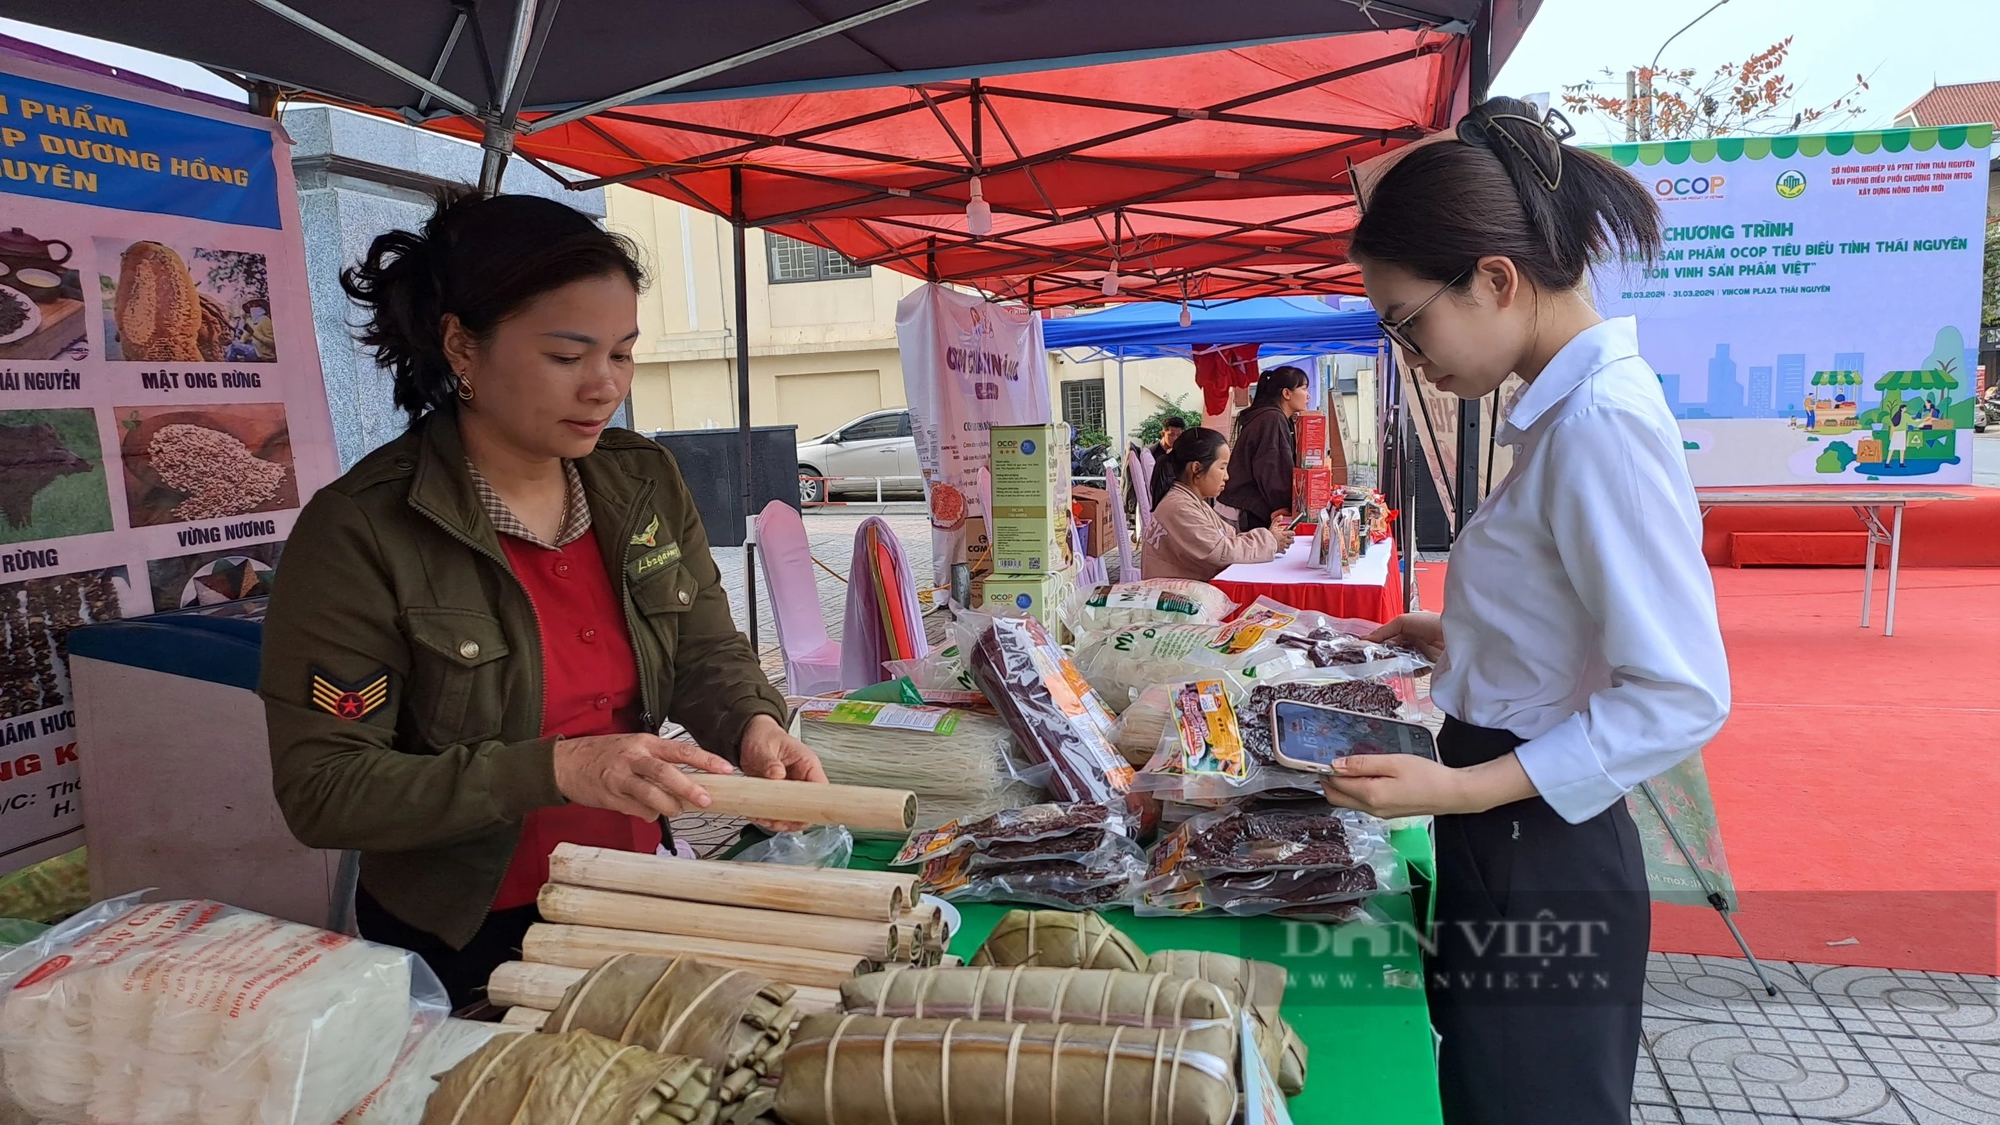 Thái Nguyên muốn đưa các sản phẩm OCOP vào chuỗi siêu thị Vincom Plaza- Ảnh 3.